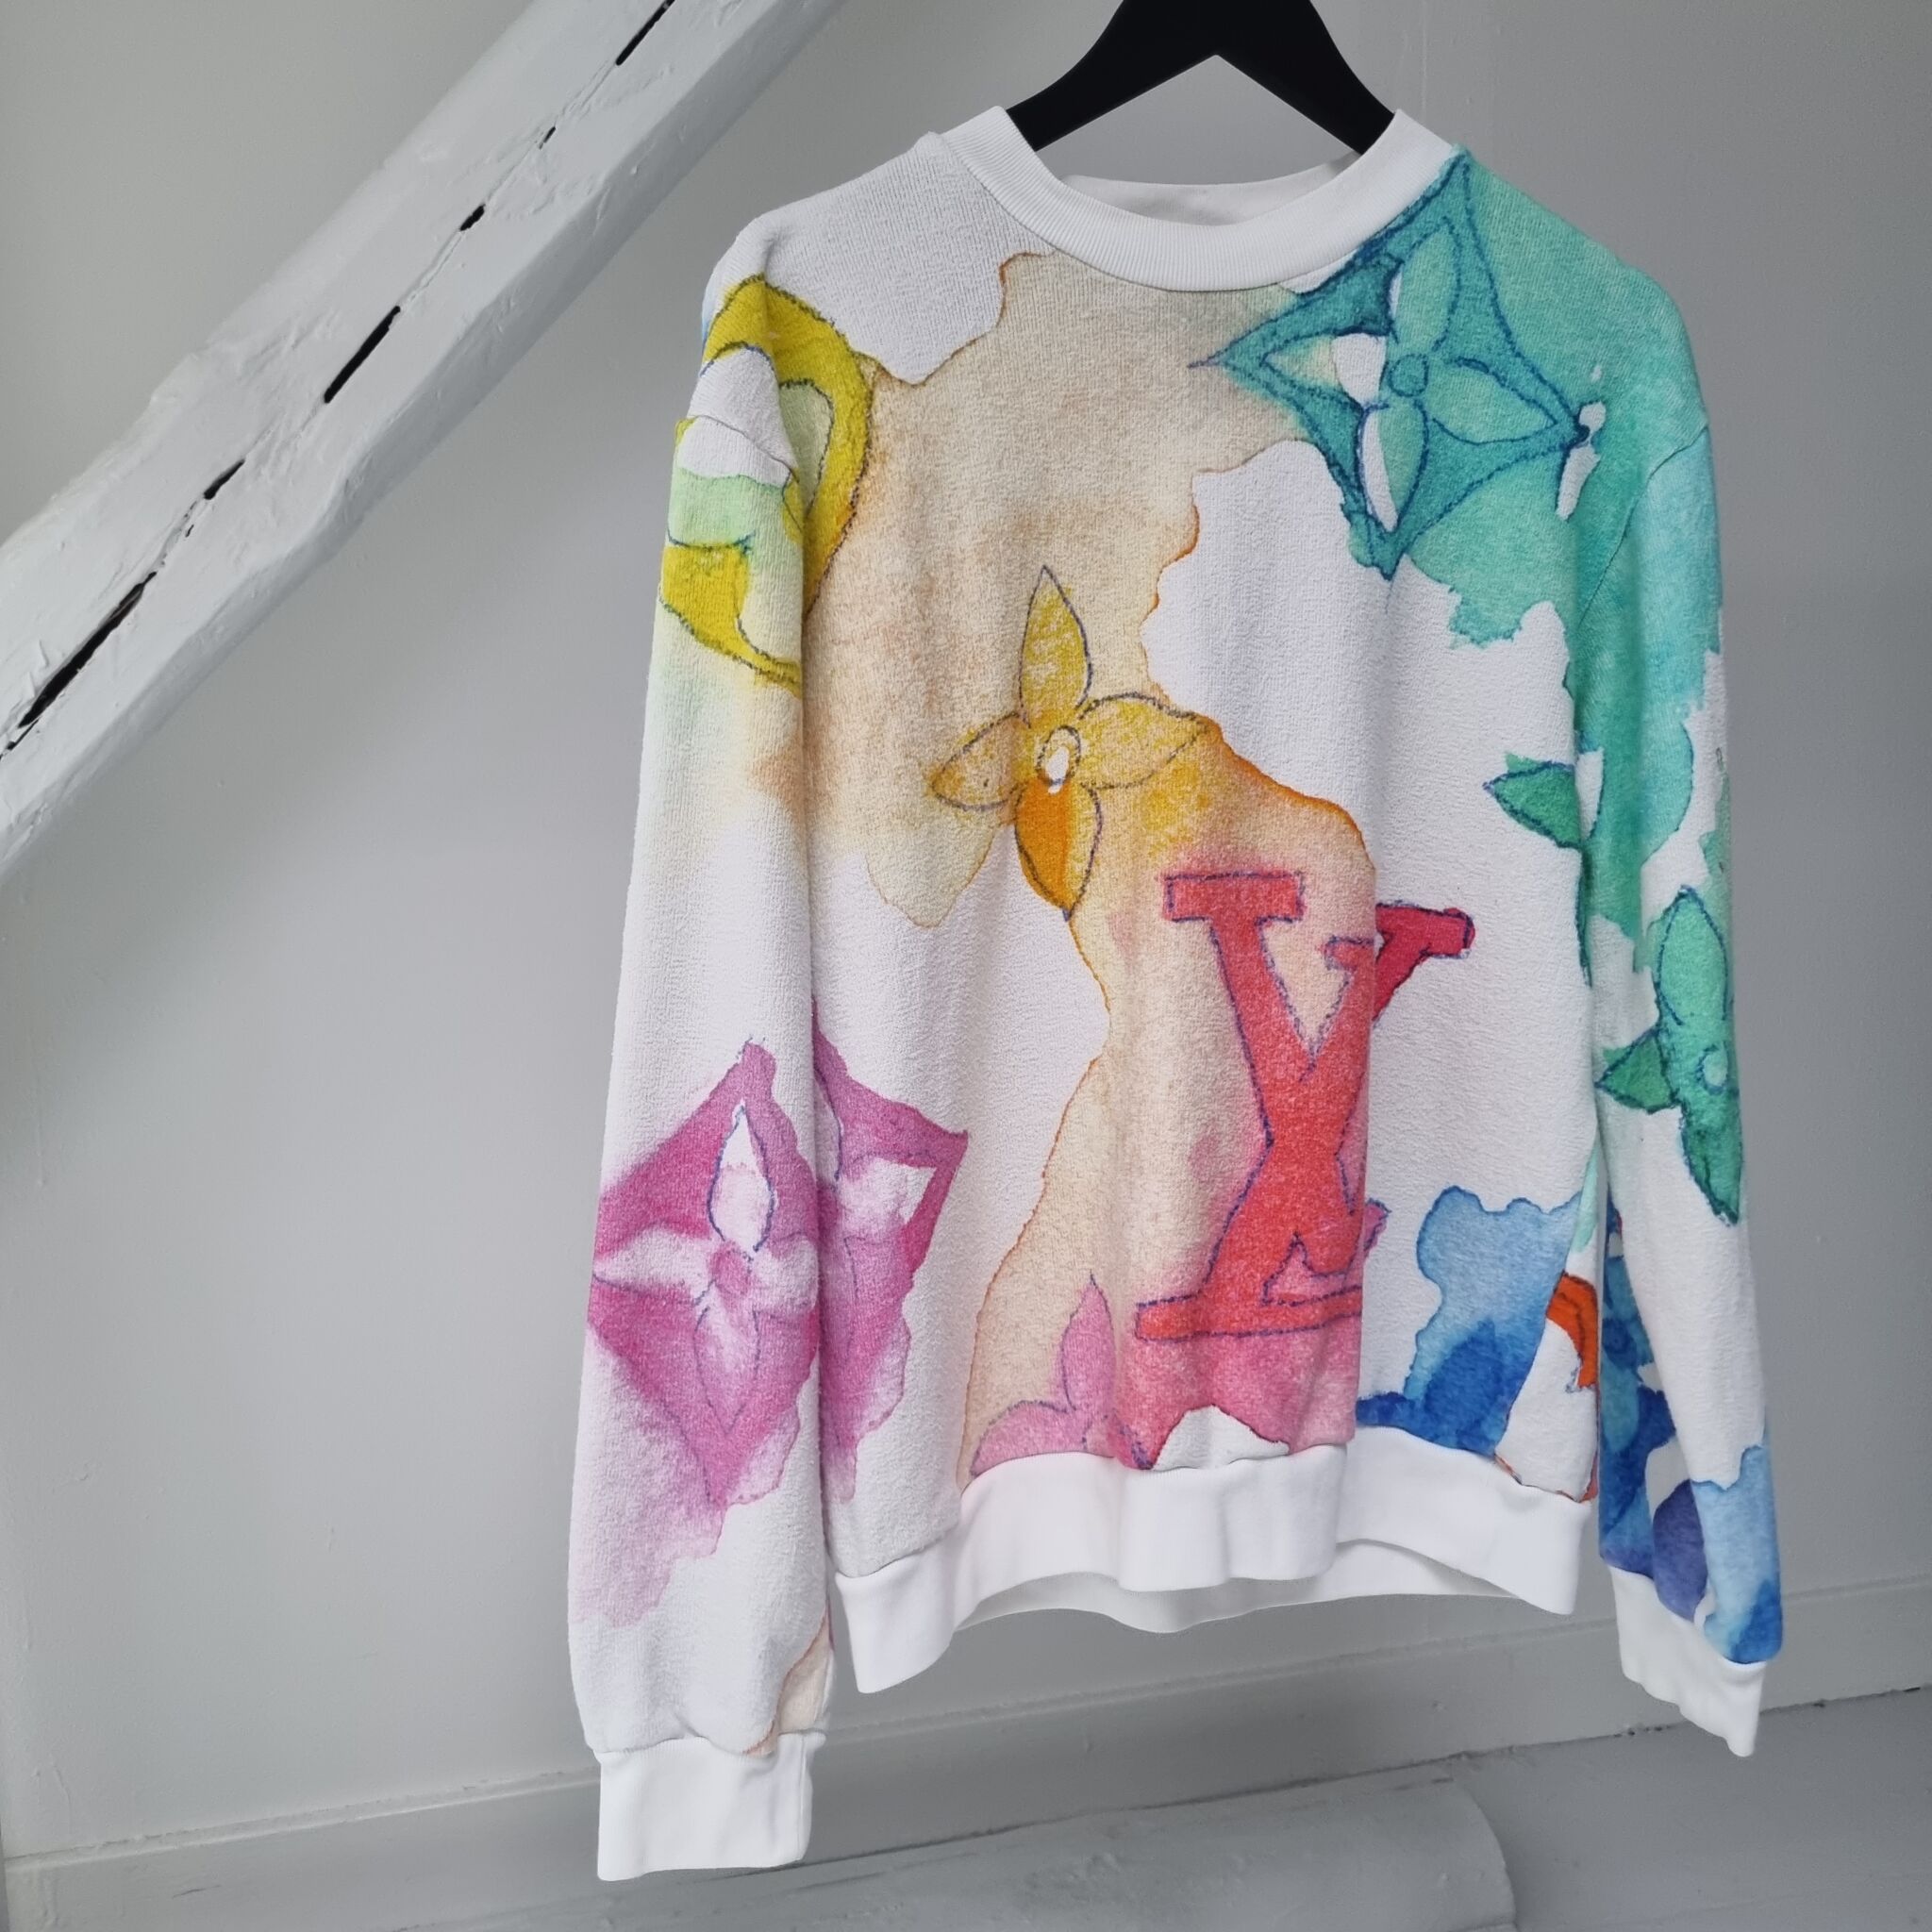 Lv Watercolor Sweatshirts Under